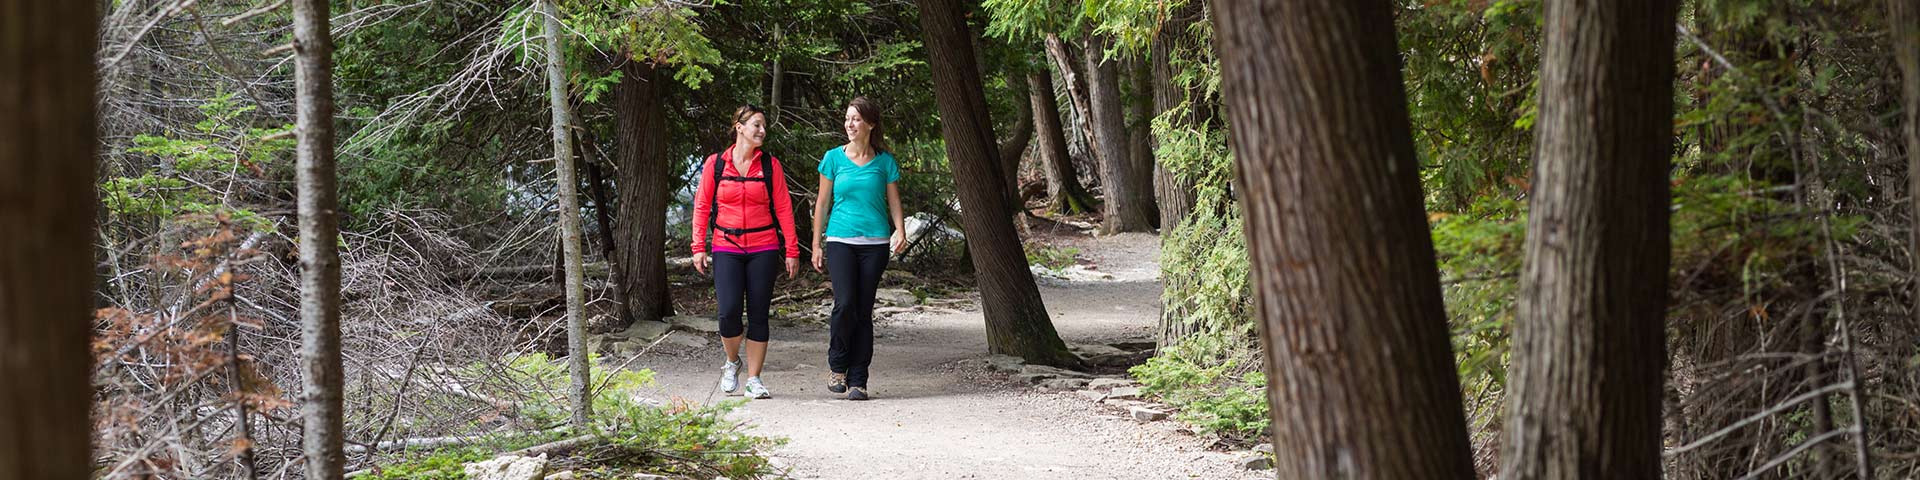 Deux femmes marchent dans une forêt